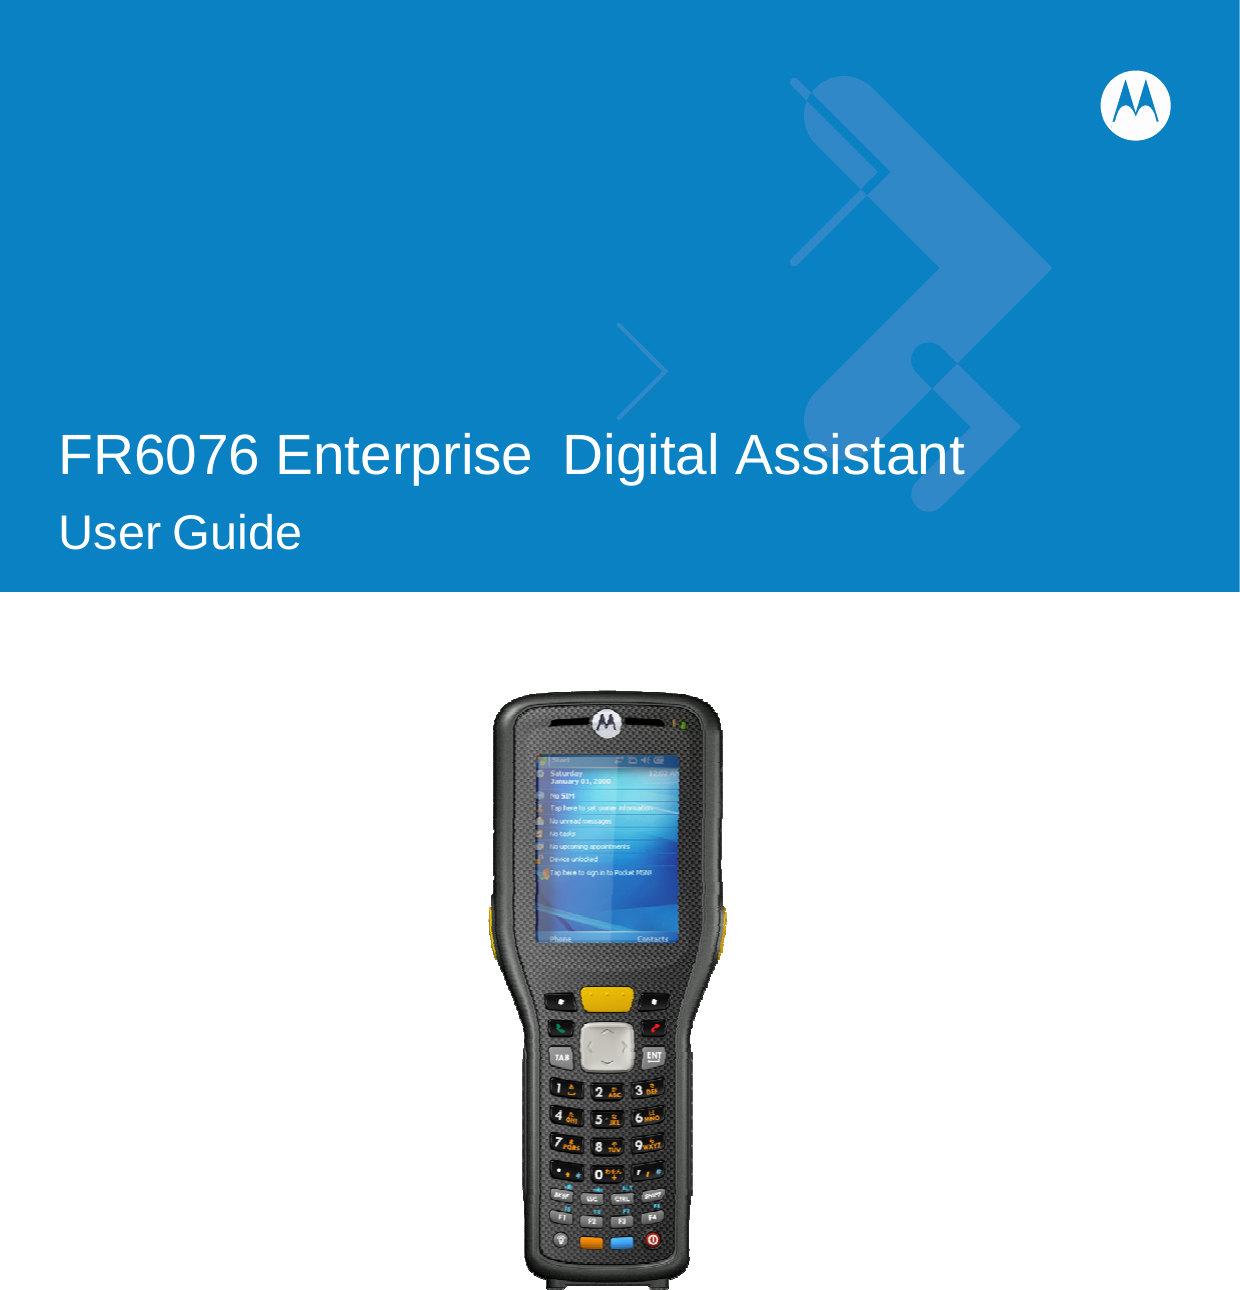              FR6076 Enterprise  Digital Assistant   User Guide                      